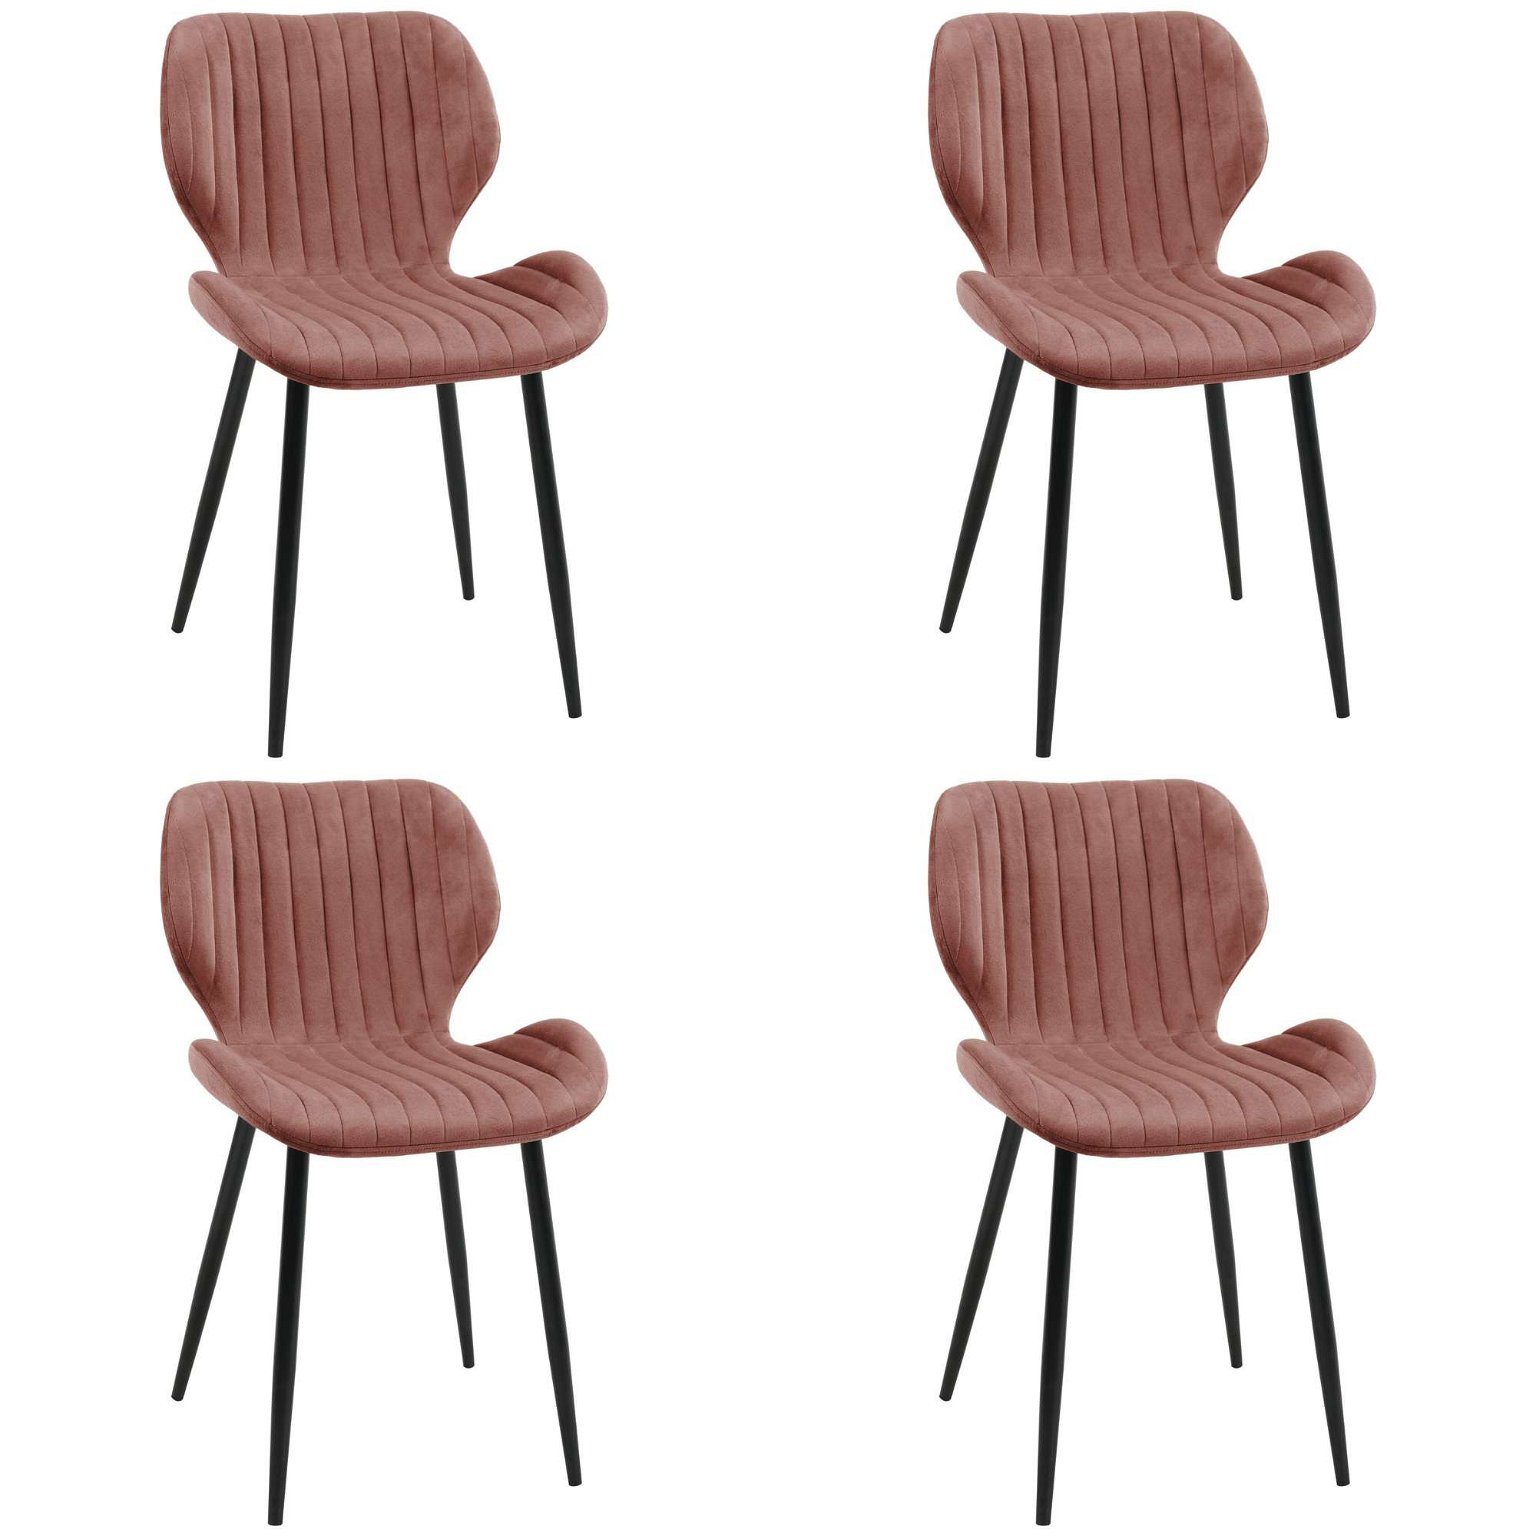 4-ių kėdžių komplektas SJ.17, rožinė